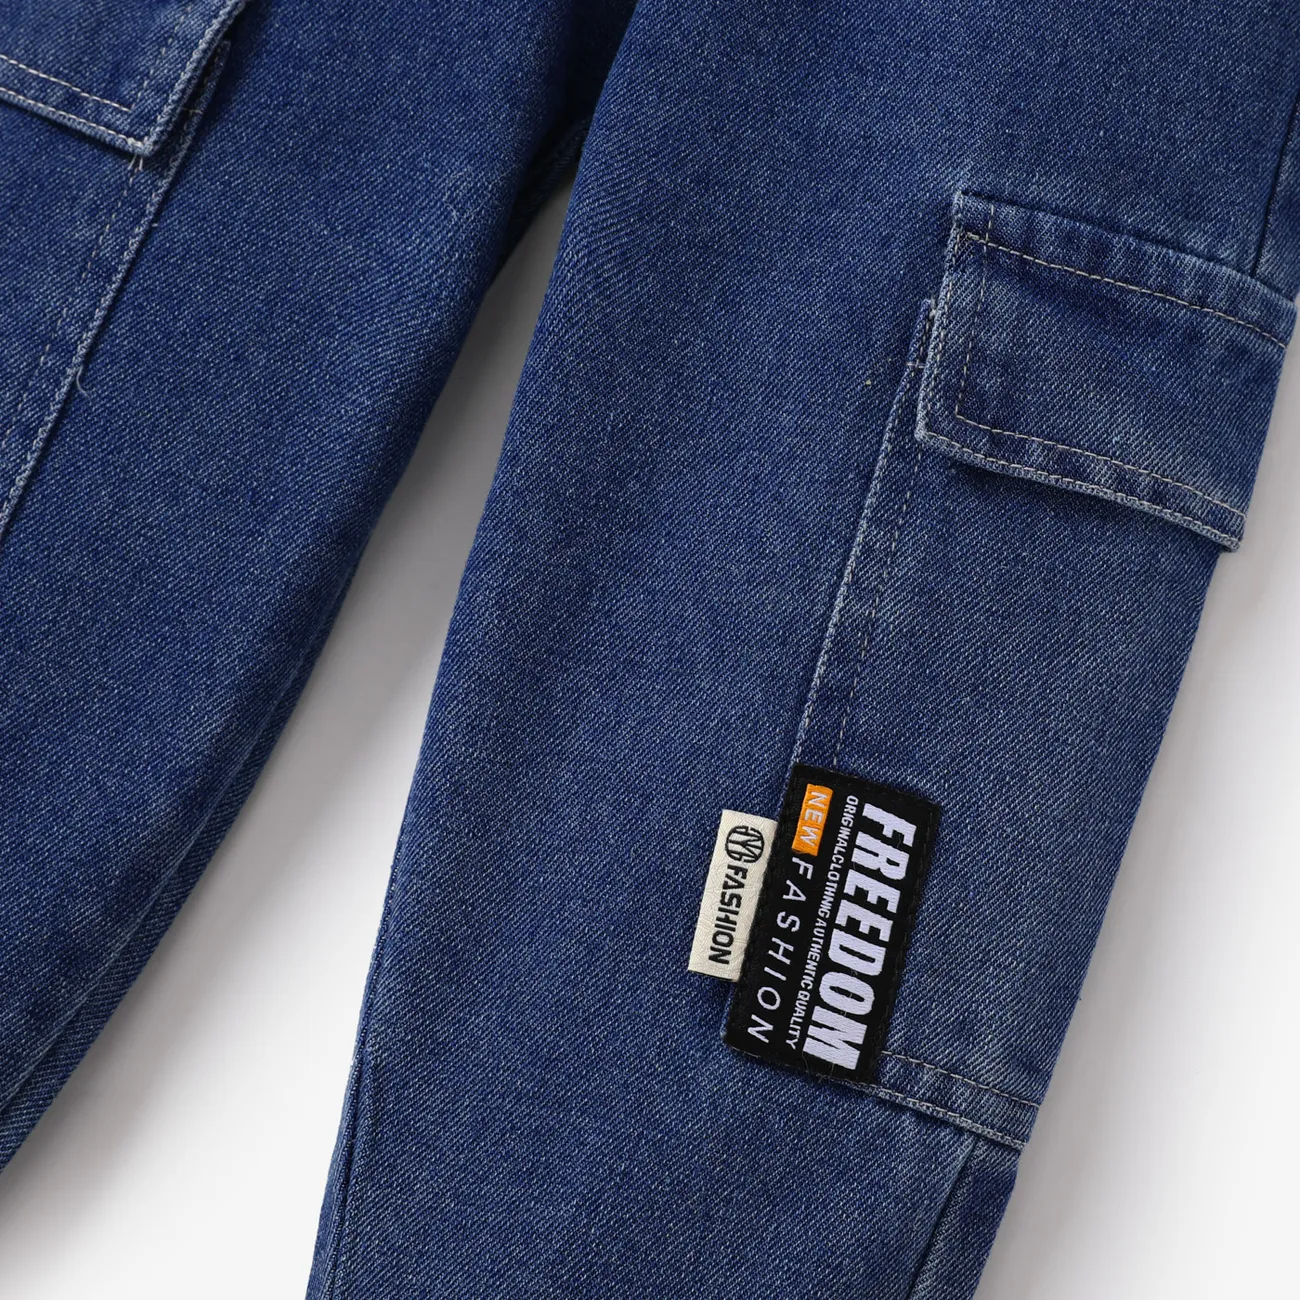 Toddler Boy/Girl Trendy Patch Pocket Denim Jeans(With Belt) Blue big image 1